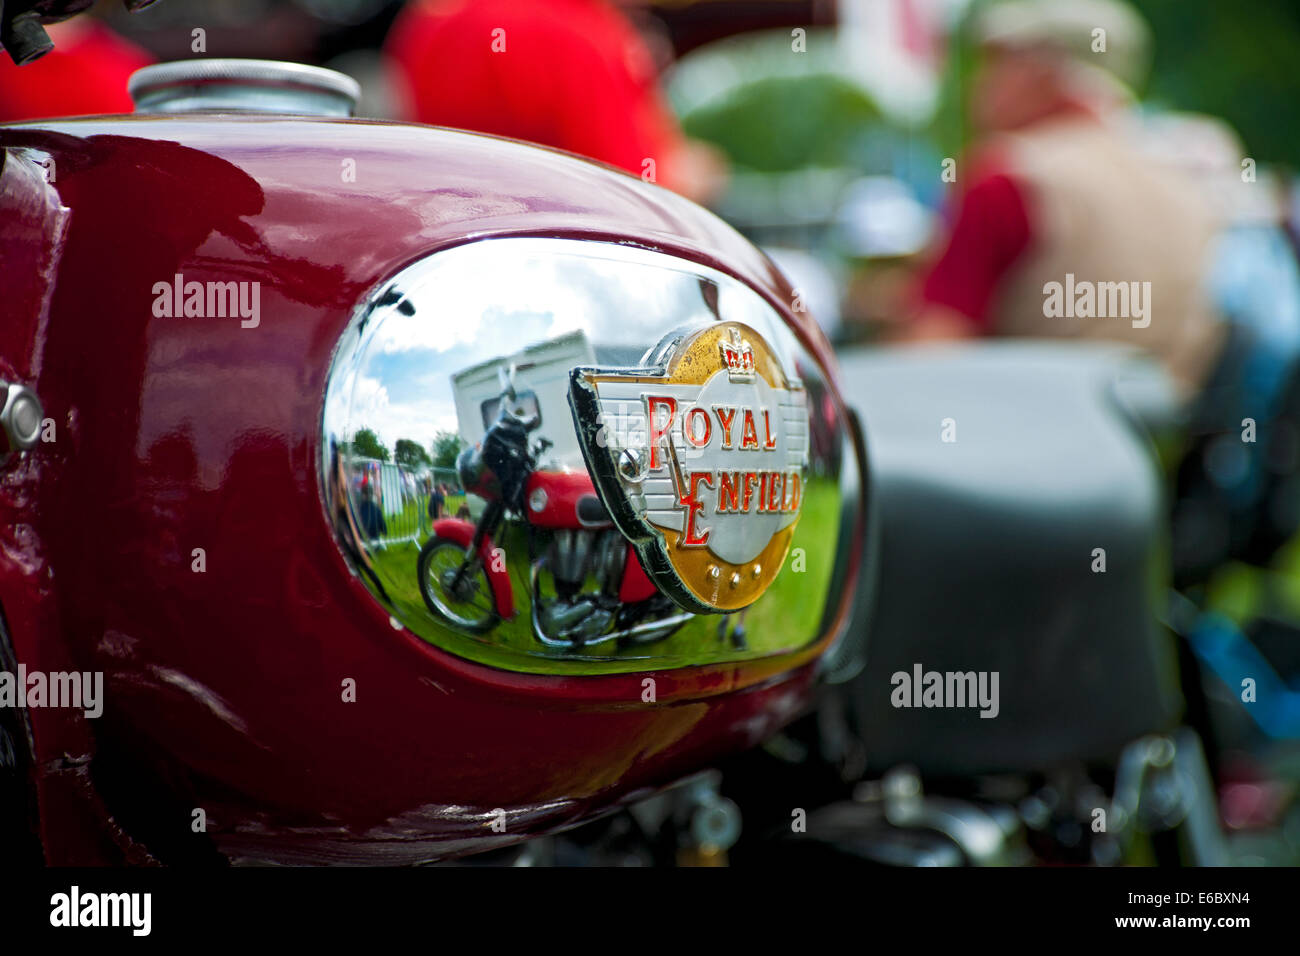 Nahaufnahme des Emblems auf einem Royal Enfield Motorrad Benzintank England UK Vereinigtes Königreich GB Großbritannien Stockfoto